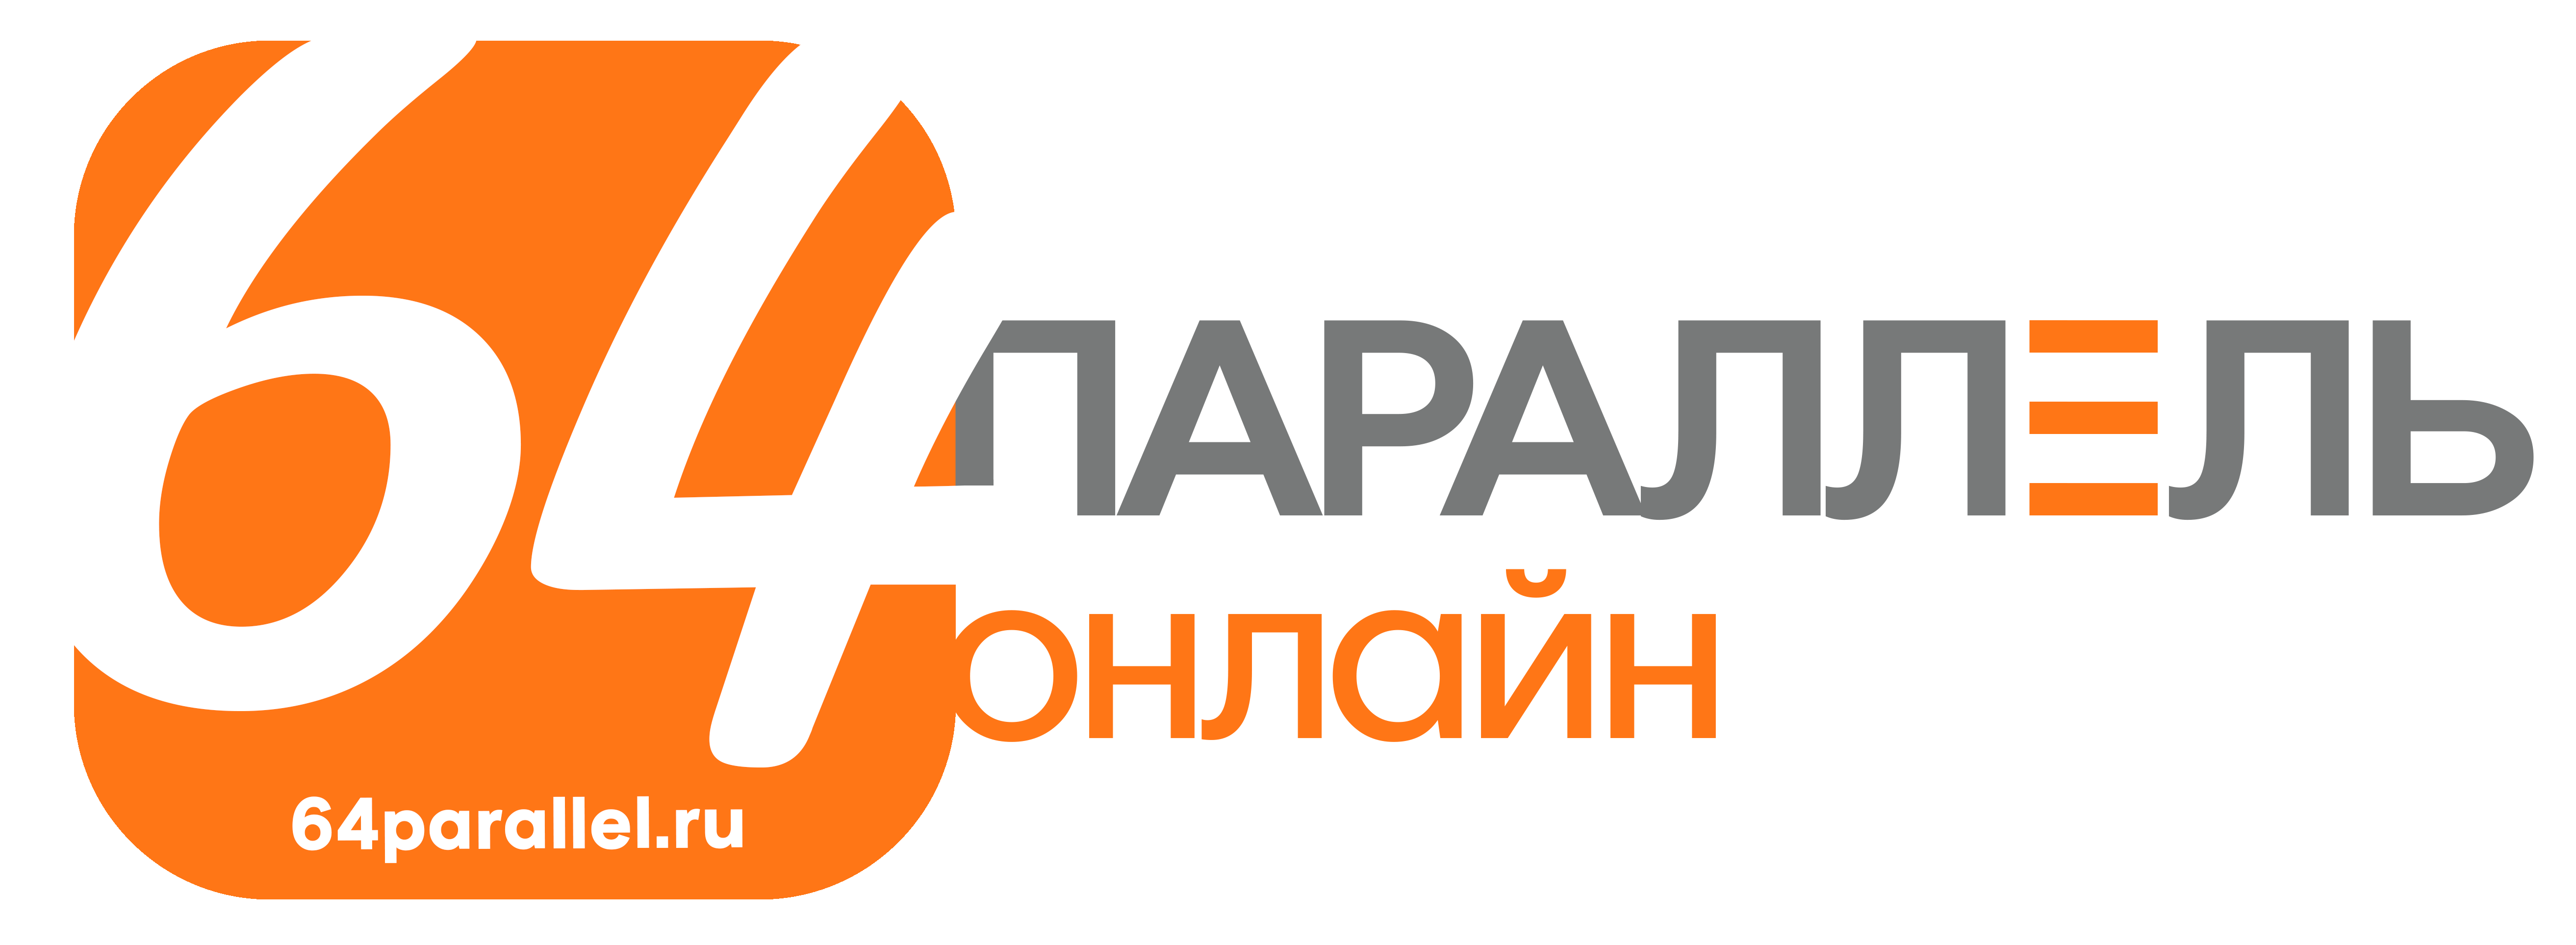 64 параллель логотип 20160506